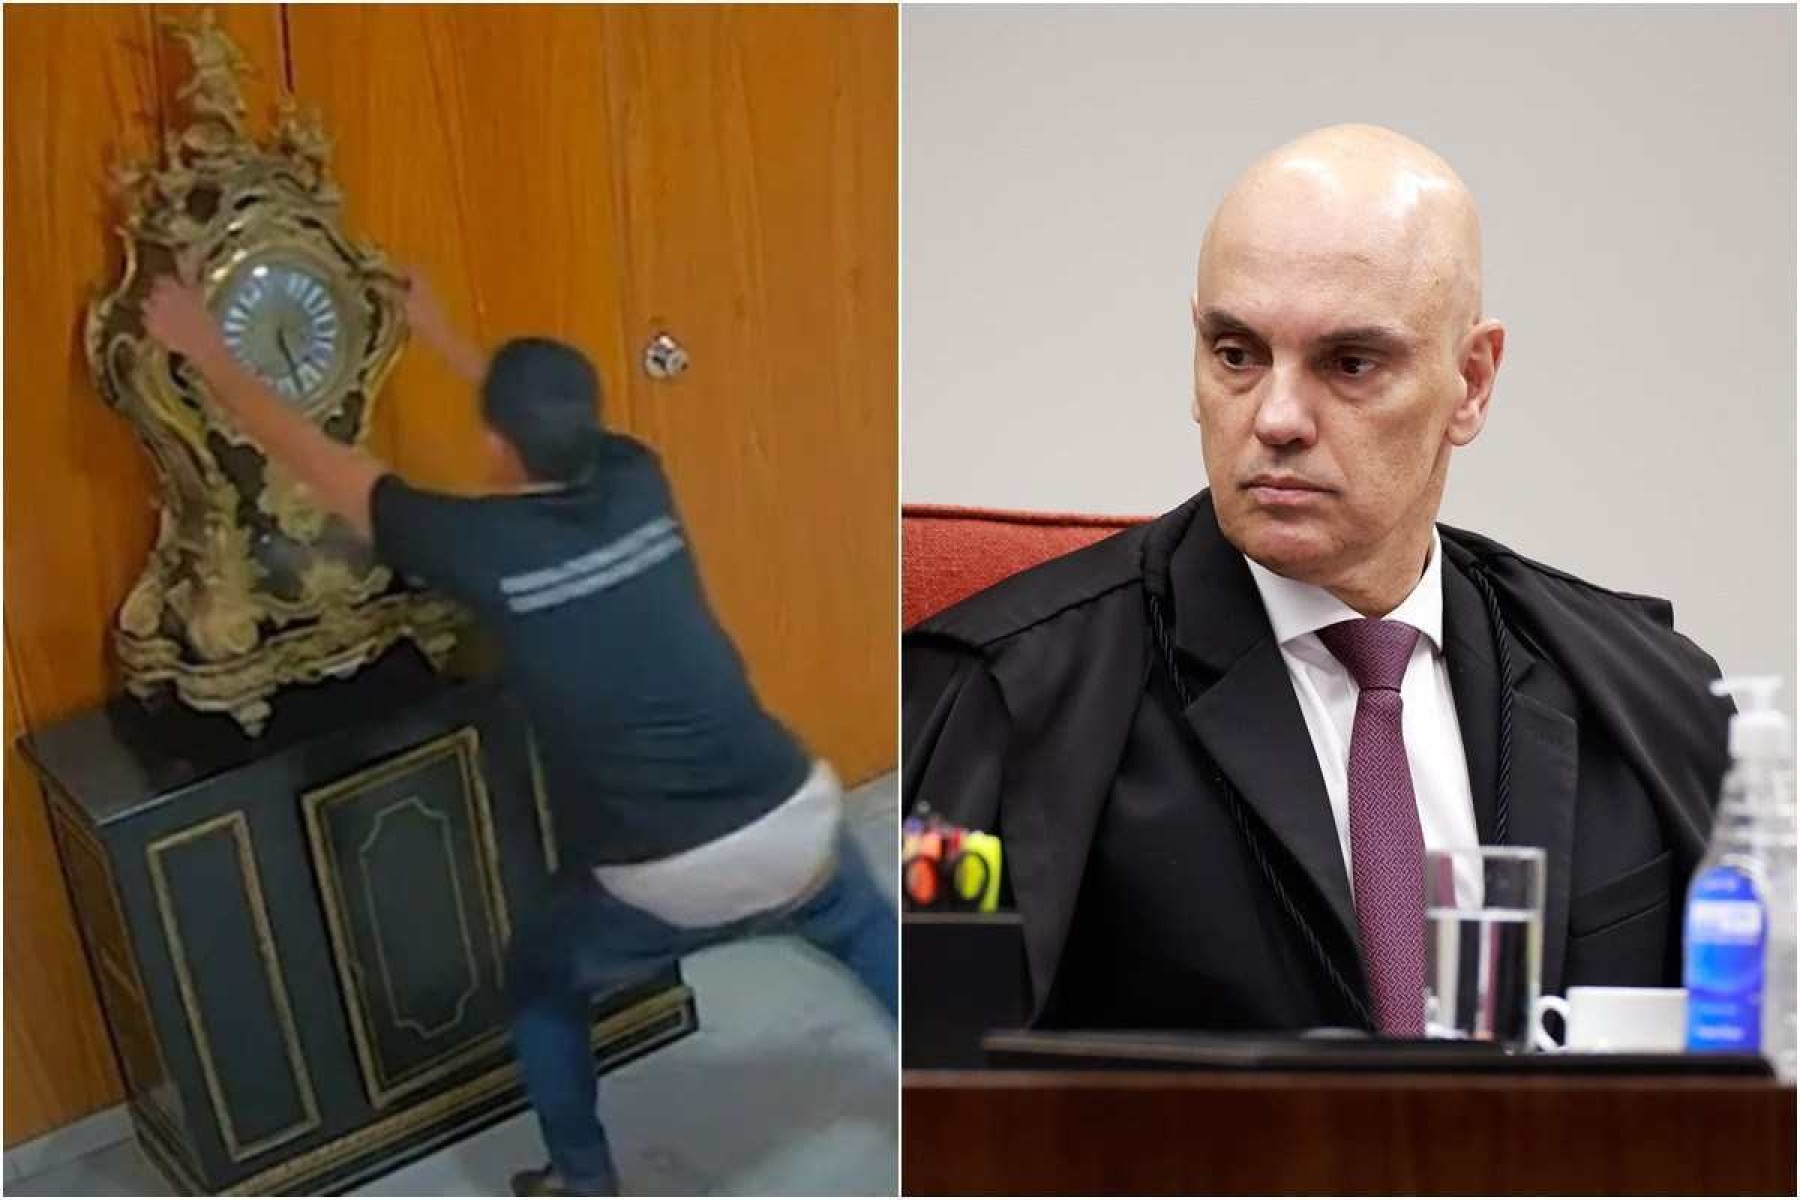 Moraes vota para condenar homem que quebrou relógio em ato golpista no 8 de janeiro